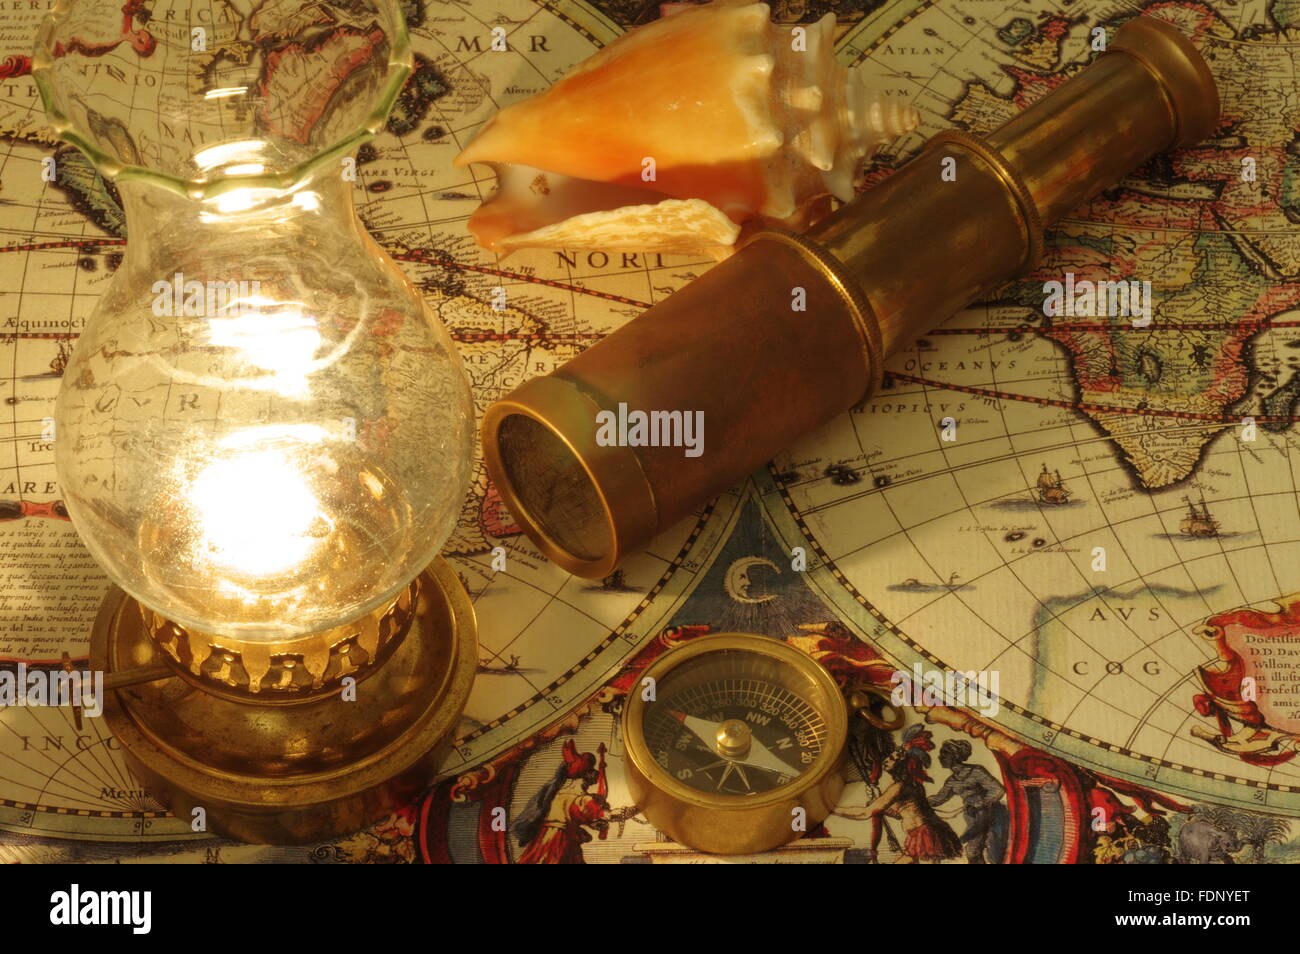 Vieux télescope, boussole, lampe au kérosène et coquillage allongé sur une vieille carte du monde. Banque D'Images